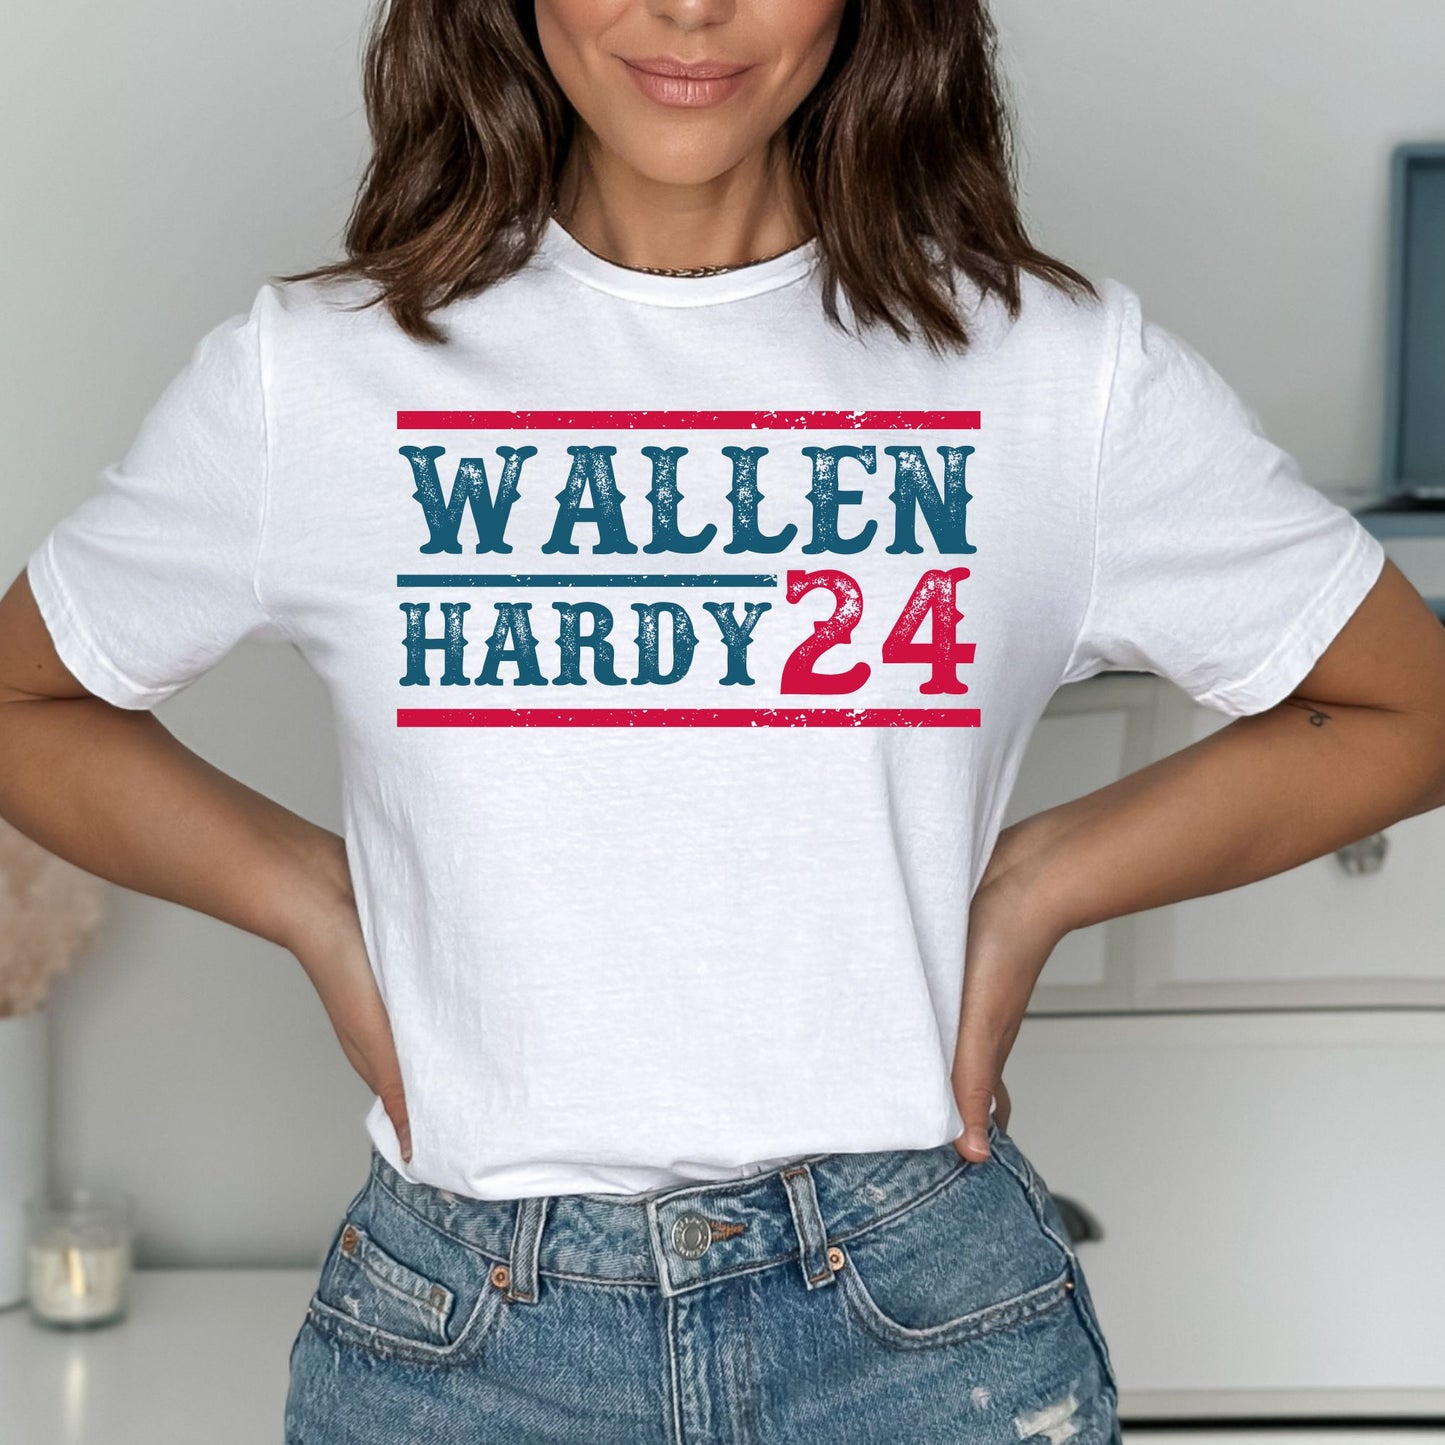 Wallen Hardy 24